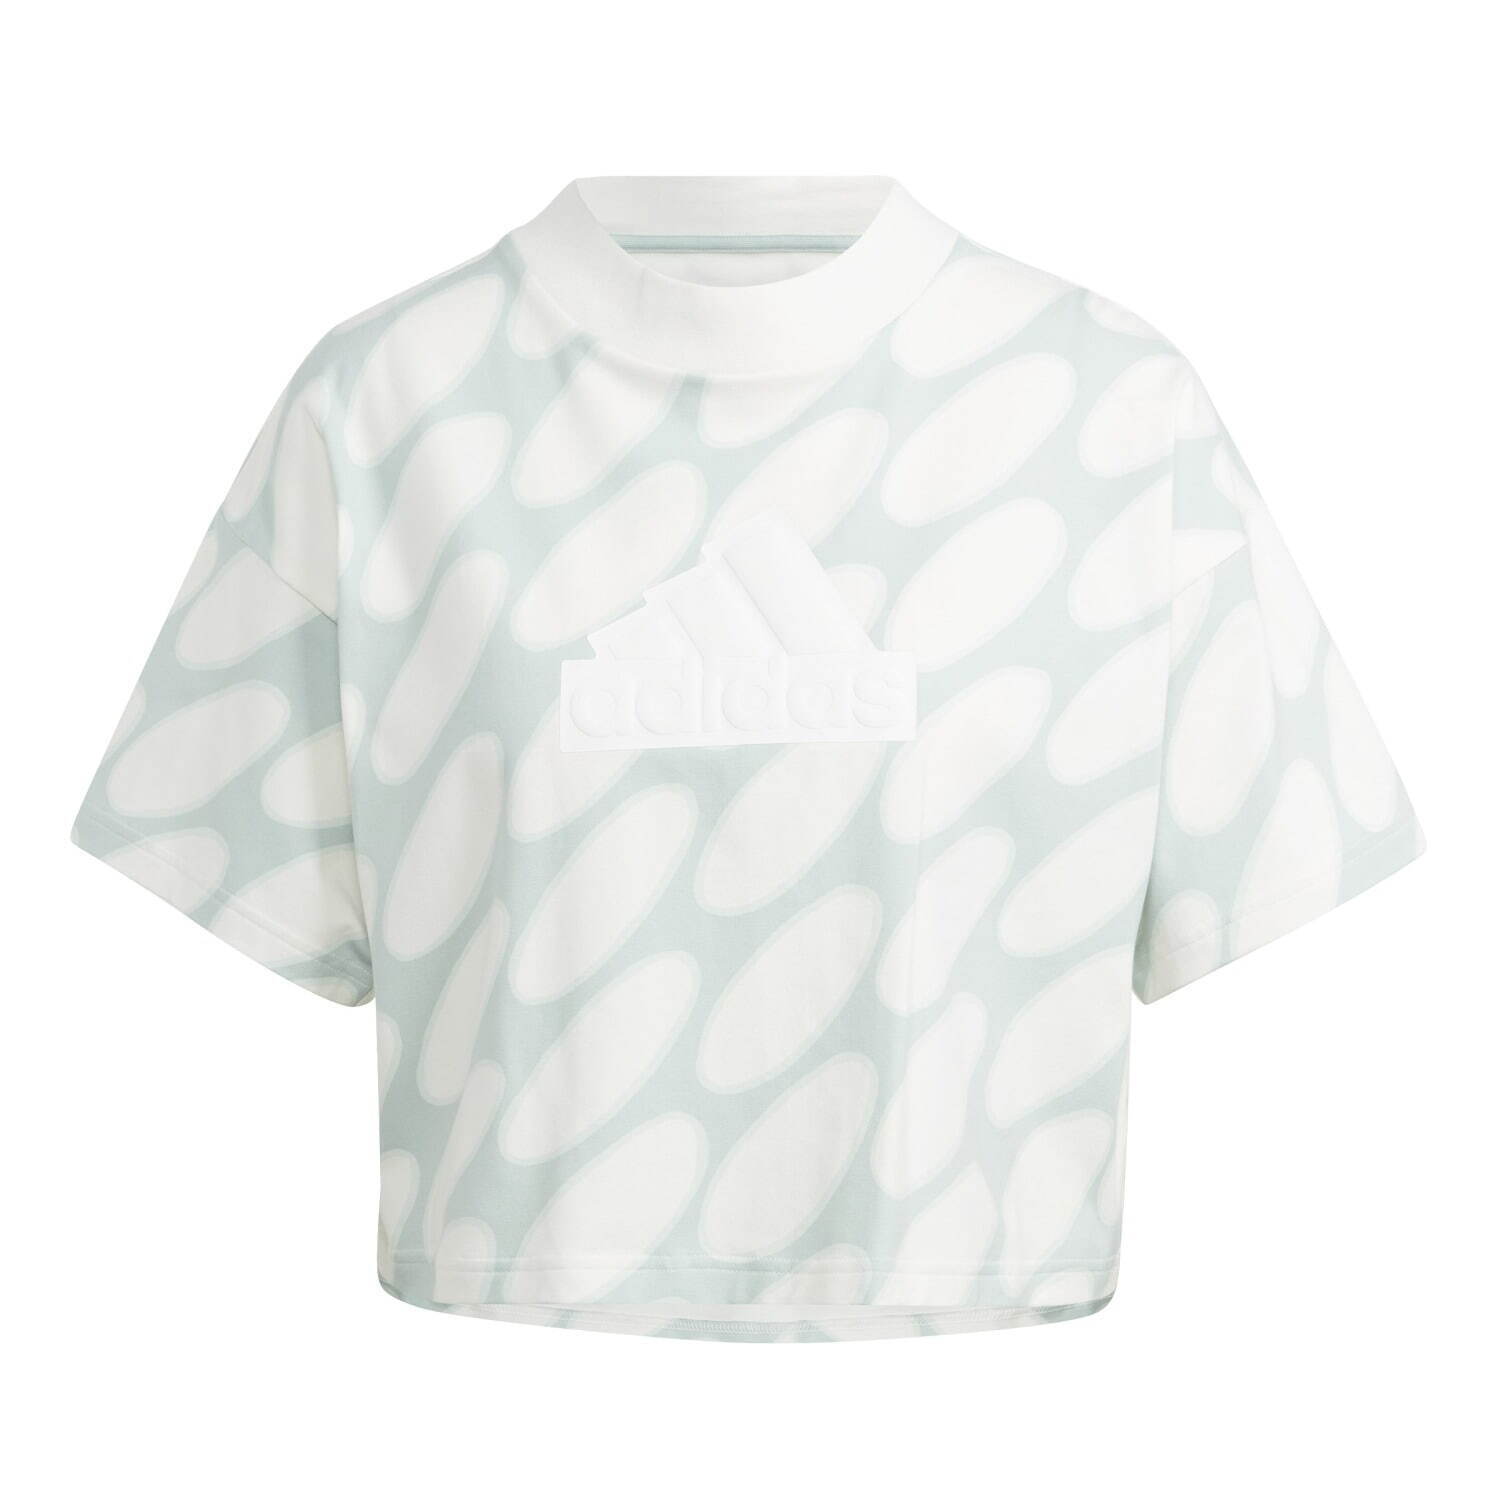 フューチャーアイコンズ スリーストライプス Tシャツ 4,950円